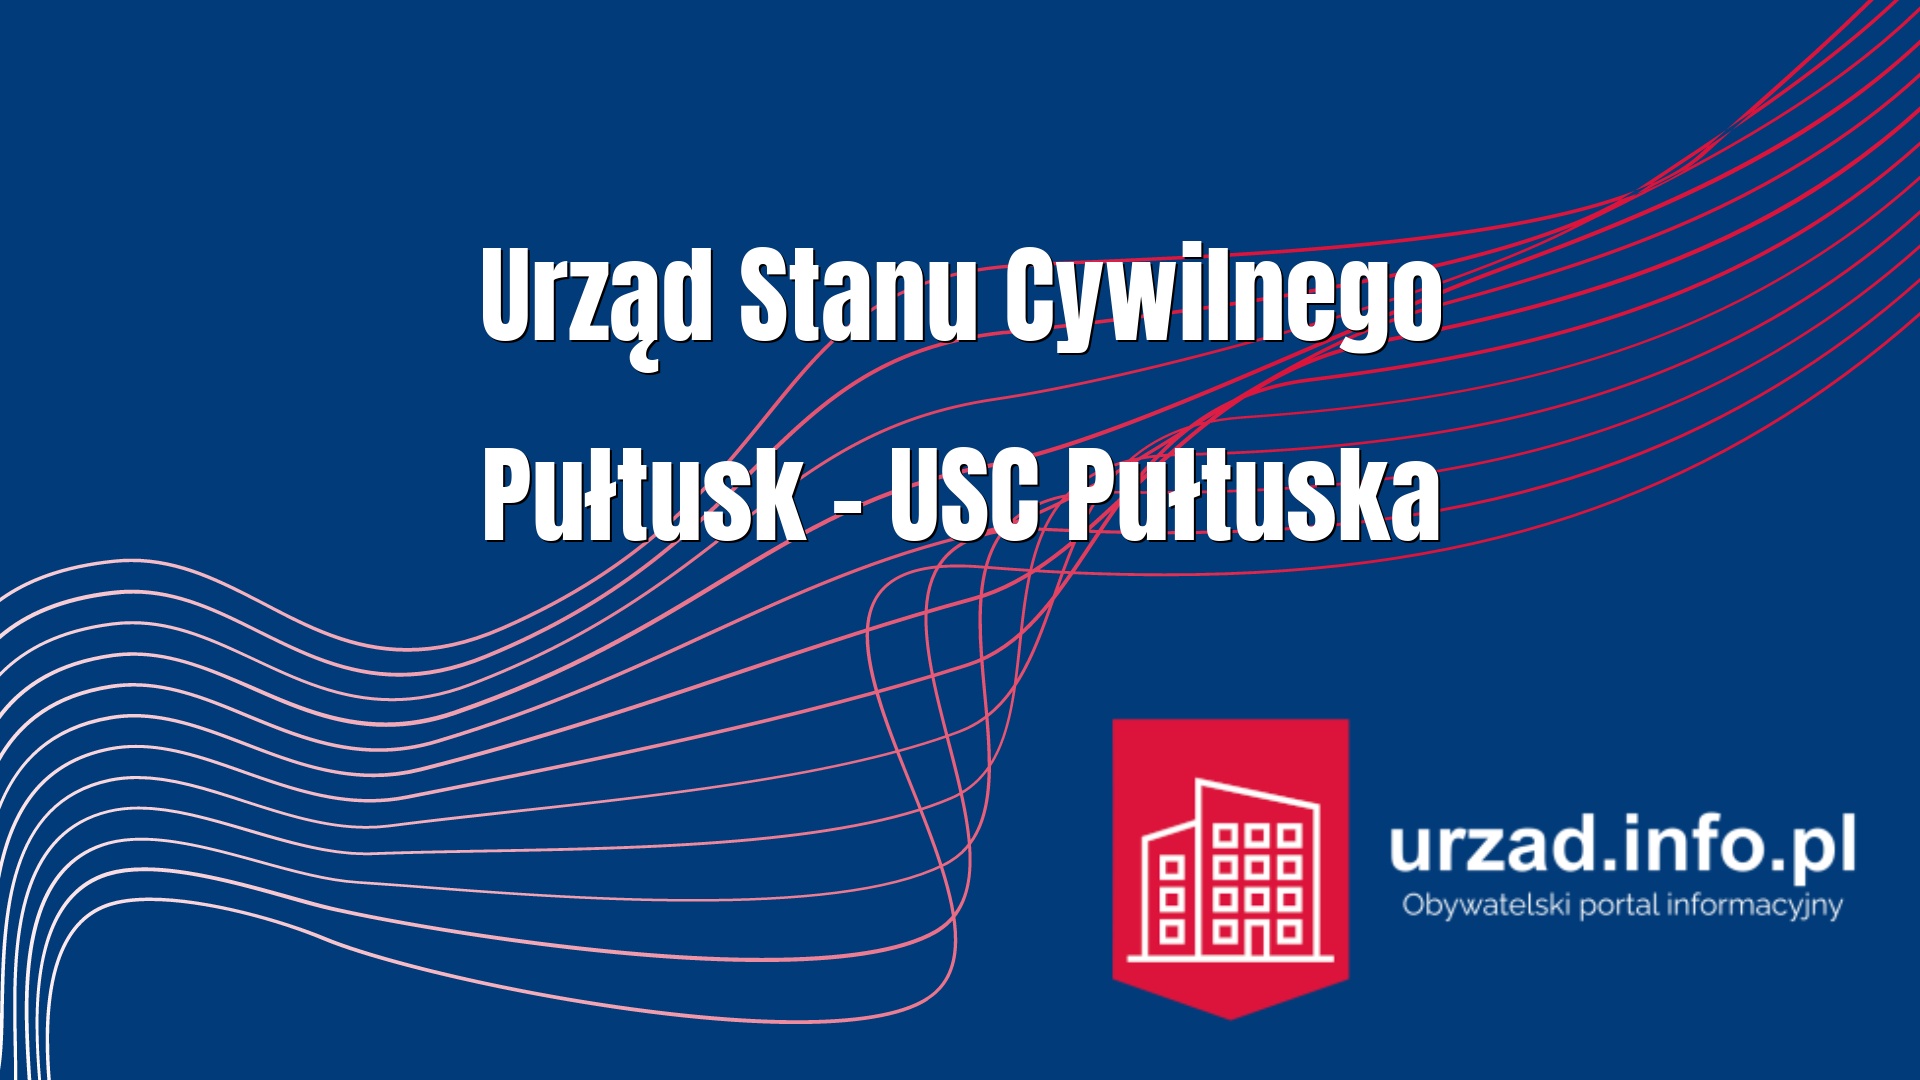 Urząd Stanu Cywilnego Pułtusk – USC Pułtuska